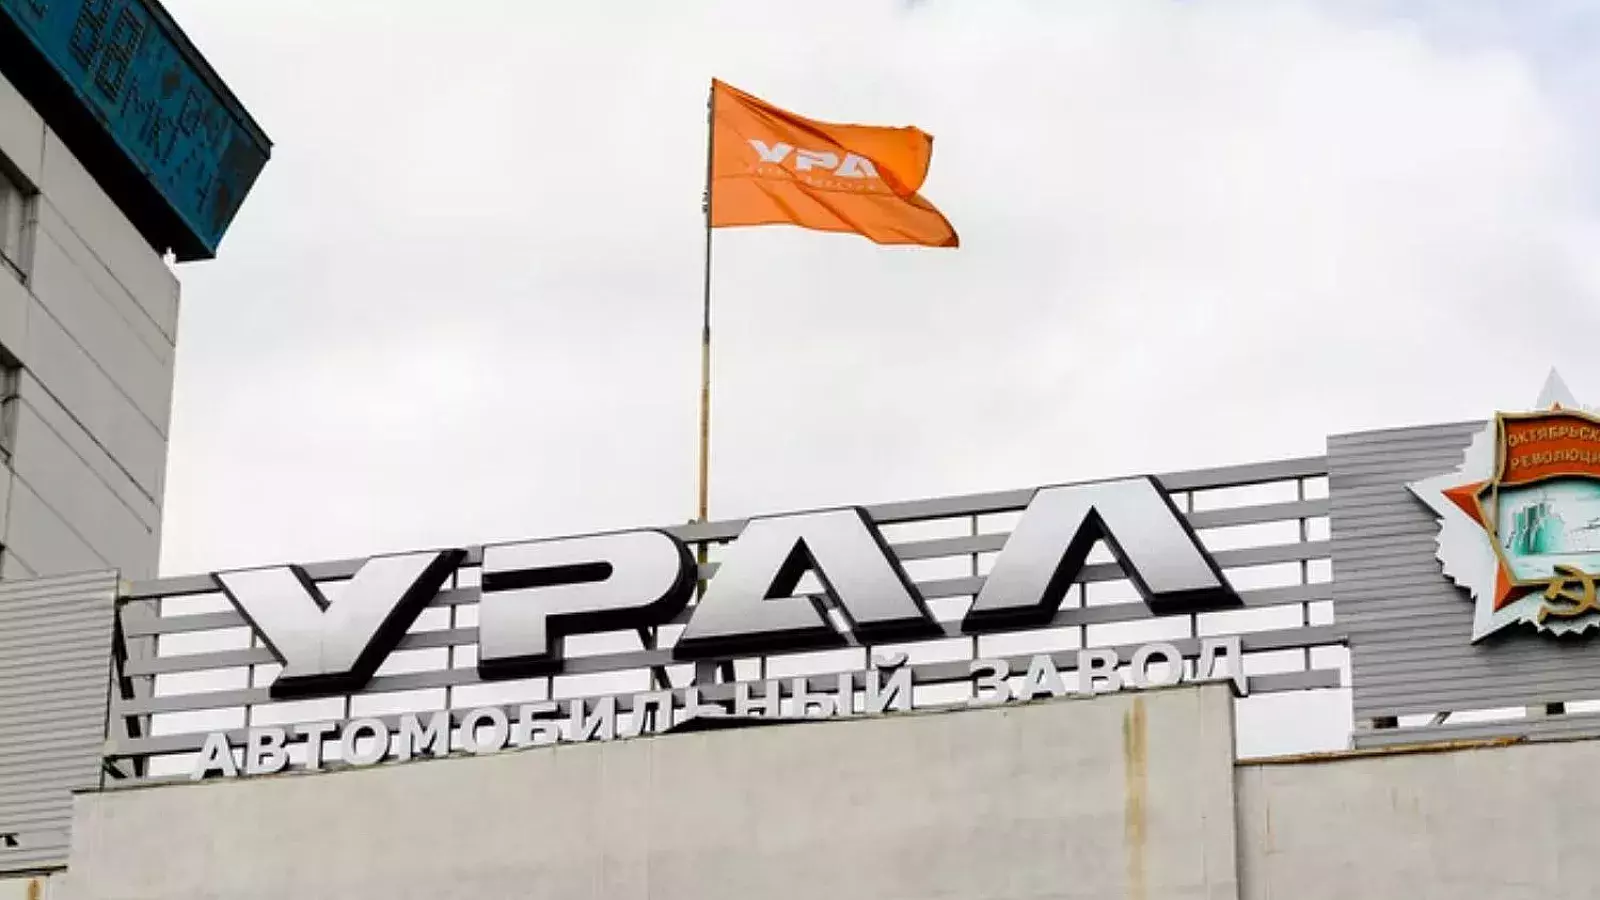 Planta de Automóviles Ural busca recuperar 23,4 millones de euros en demanda a empresas cubanas y rusas